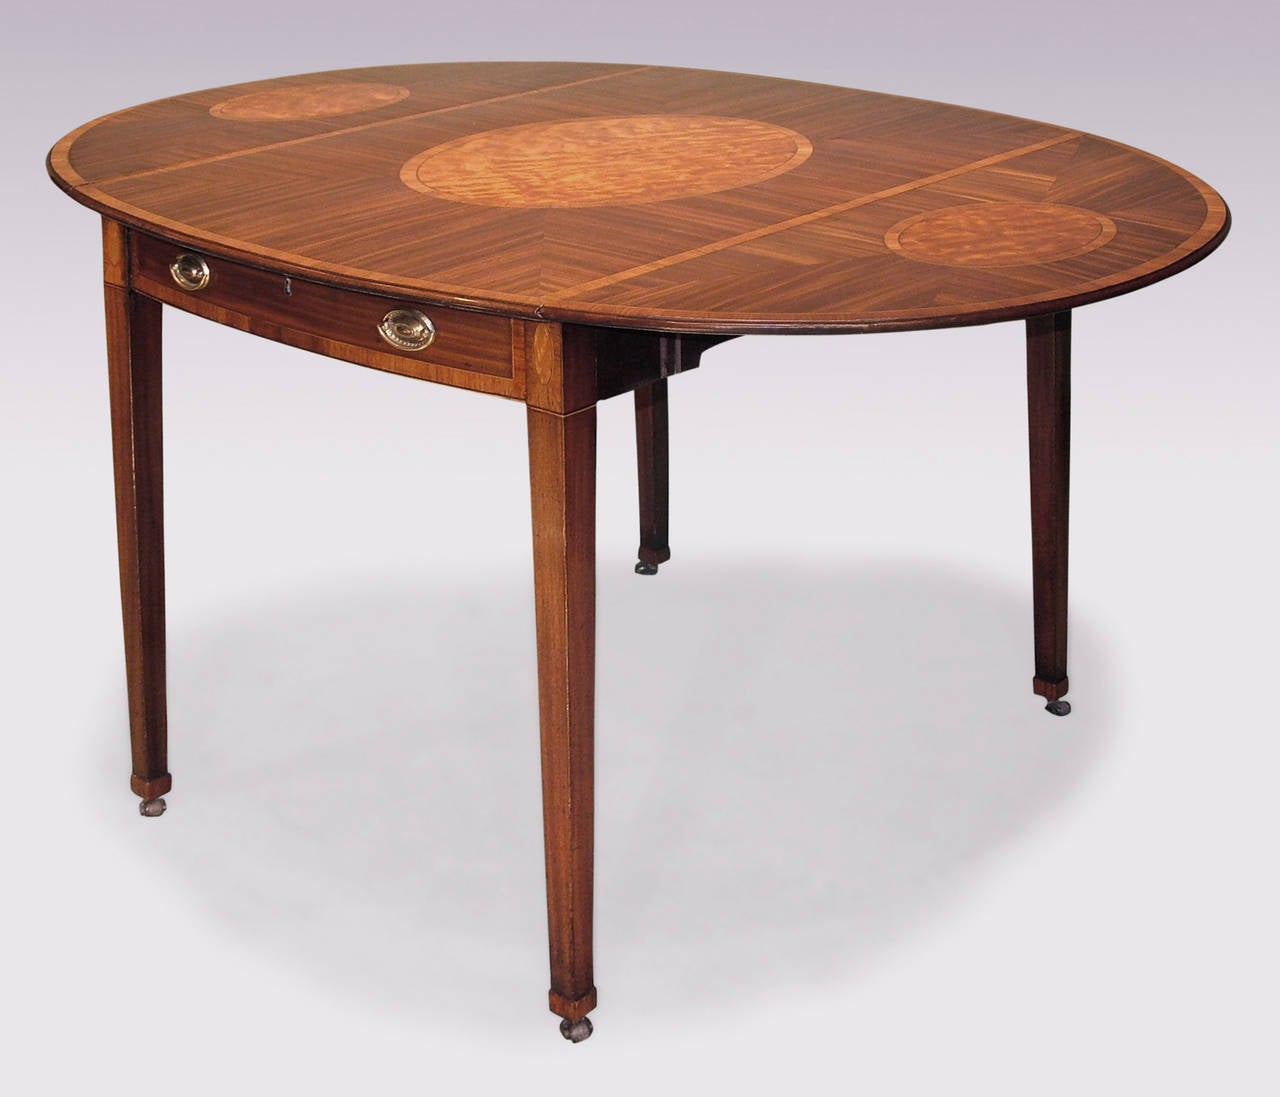 Grande table Pembroke en acajou de la période Sheraton de la fin du XVIIIe siècle, avec un plateau ovale à bandes croisées en bois de tulipier, centré par des panneaux ovales en bois satiné au centre et sur les rabats, au-dessus de tiroirs de frise